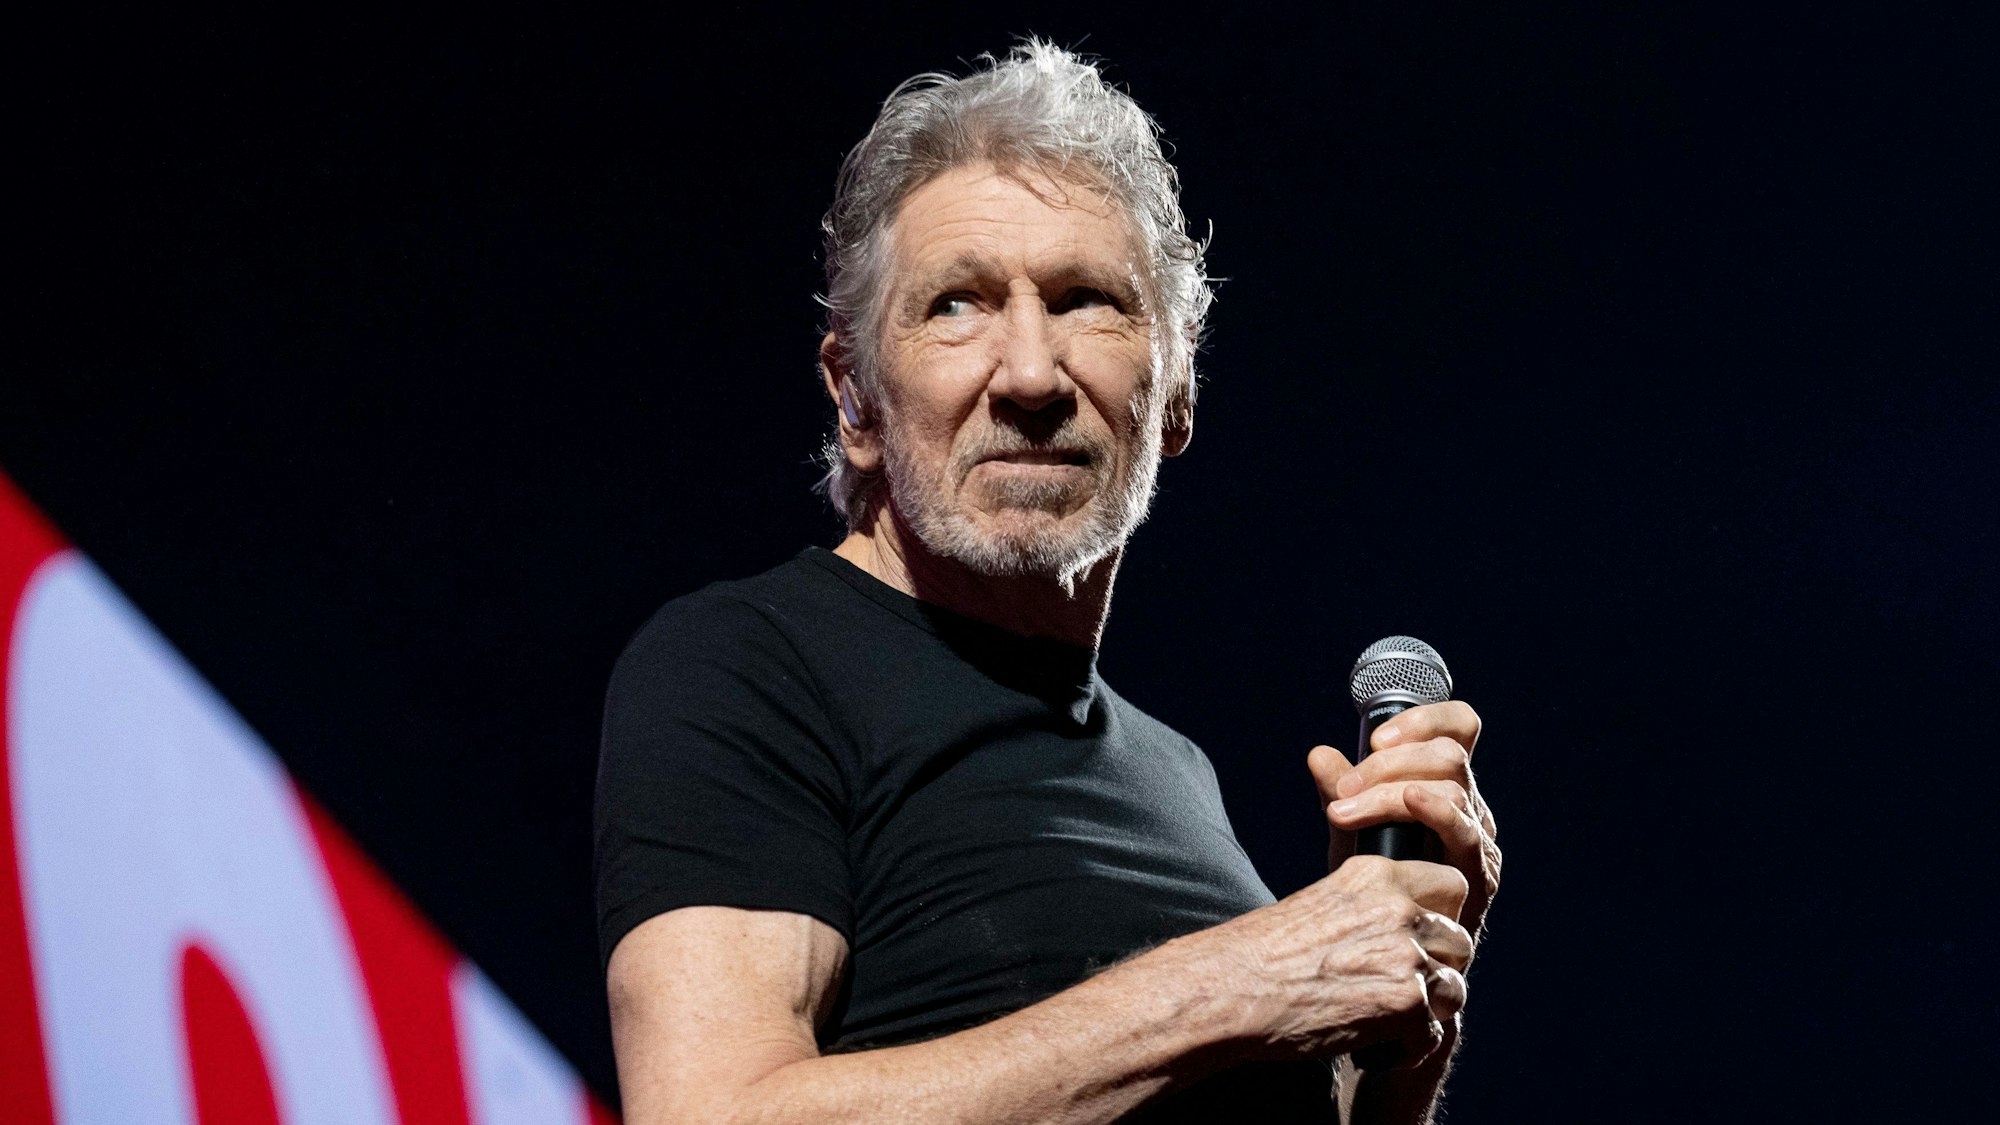 Roger Waters steht auf der Bühne und schaut zur Seite.